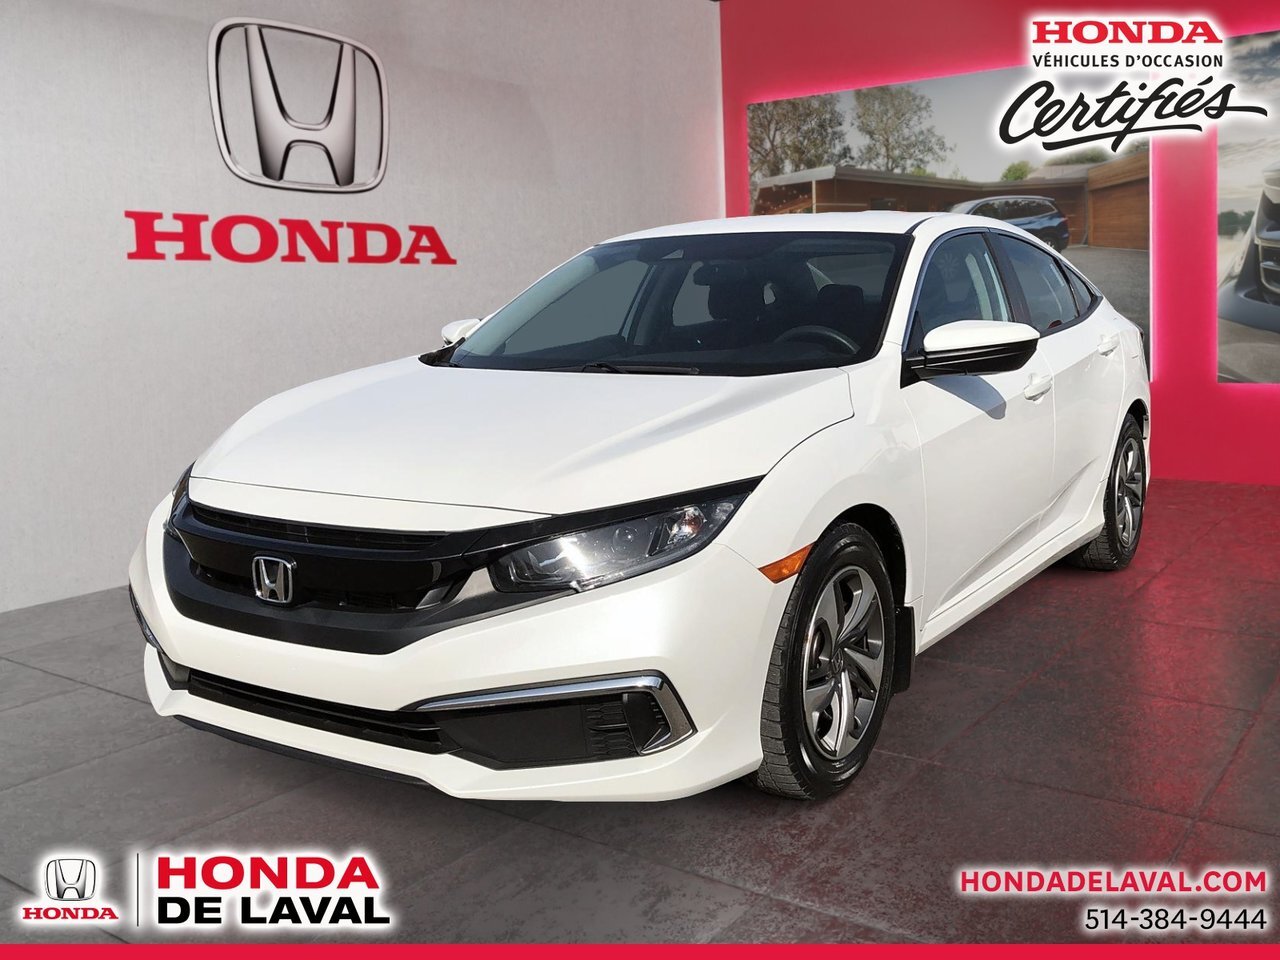 2020 Honda Civic LX 37.090 certifie honda